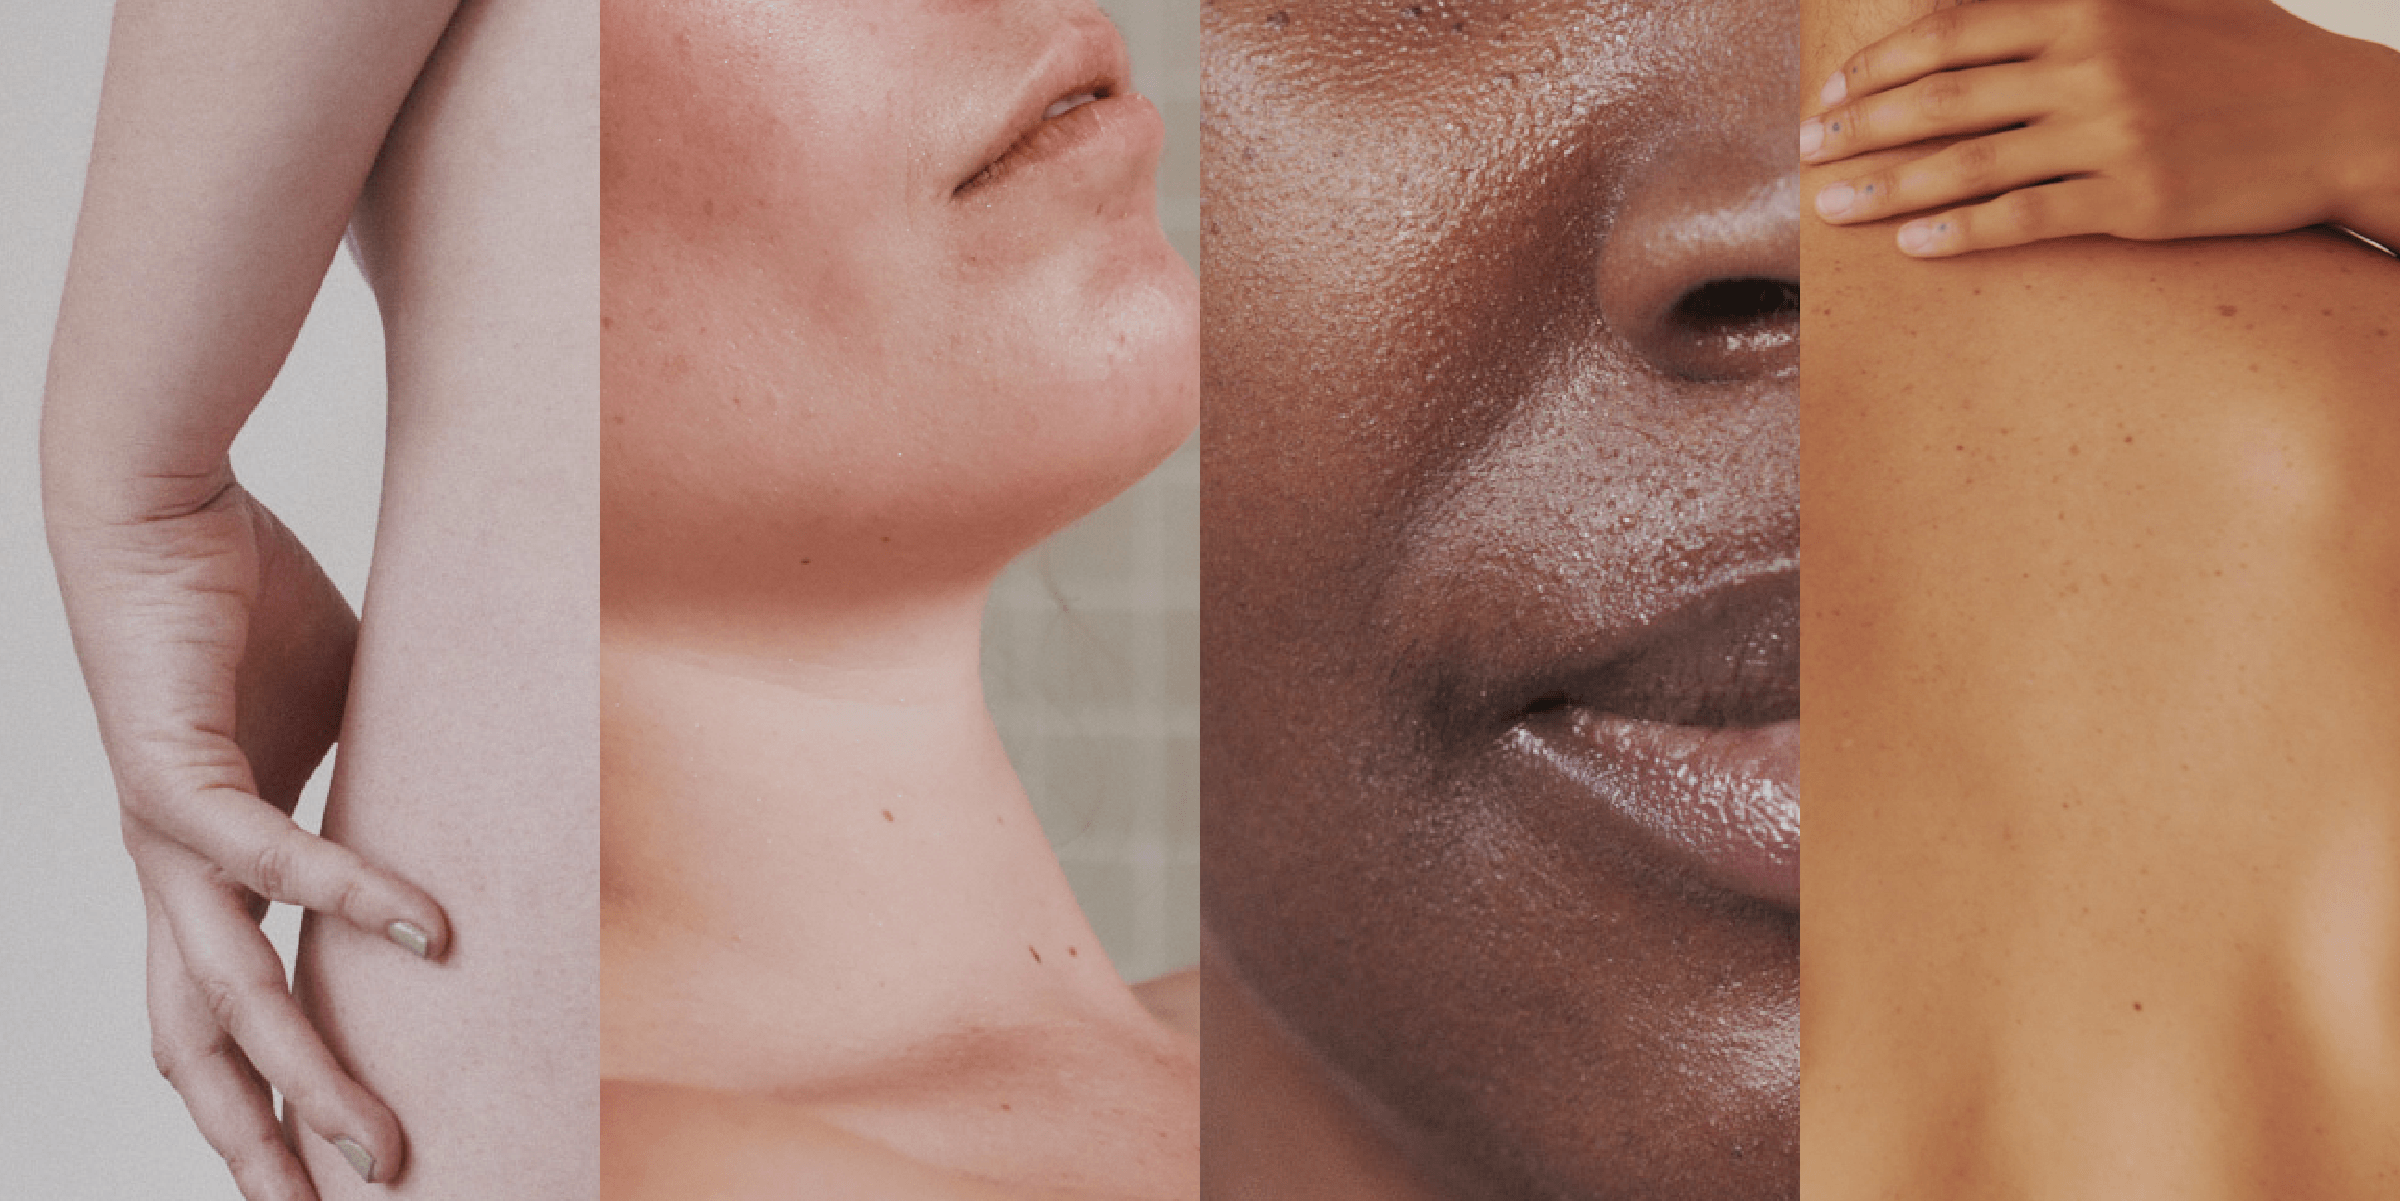 Vier Gesichter mit unterschiedlichen Hauttypen.